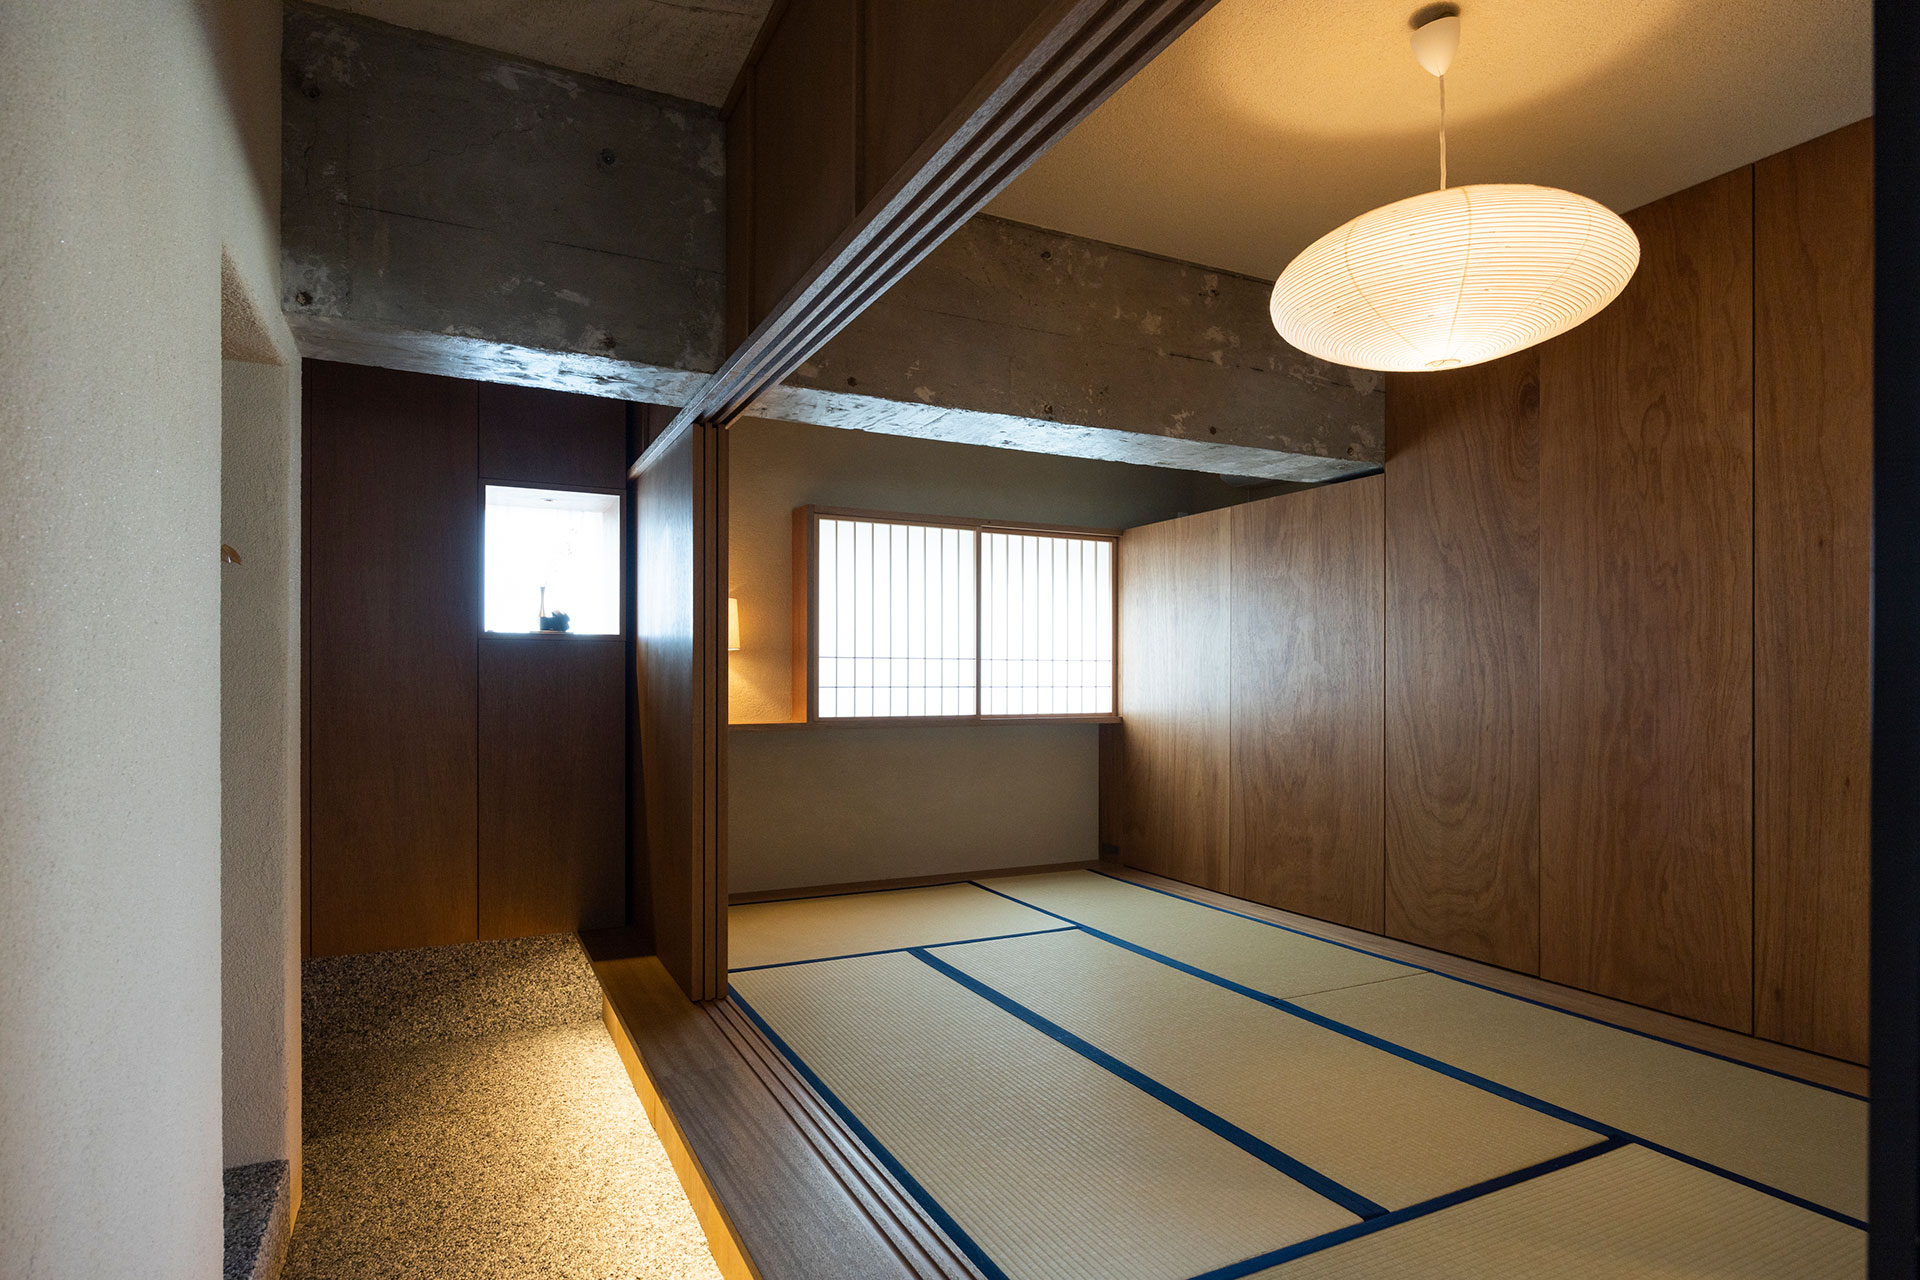 多目的に使える和室。オリジナルサイズの畳は匂いのしない和紙を使用したもの。畳の下と、ラワンのプッシュオープン式扉で覆われた壁面も収納になっている。縁側下の間接照明が幻想的。